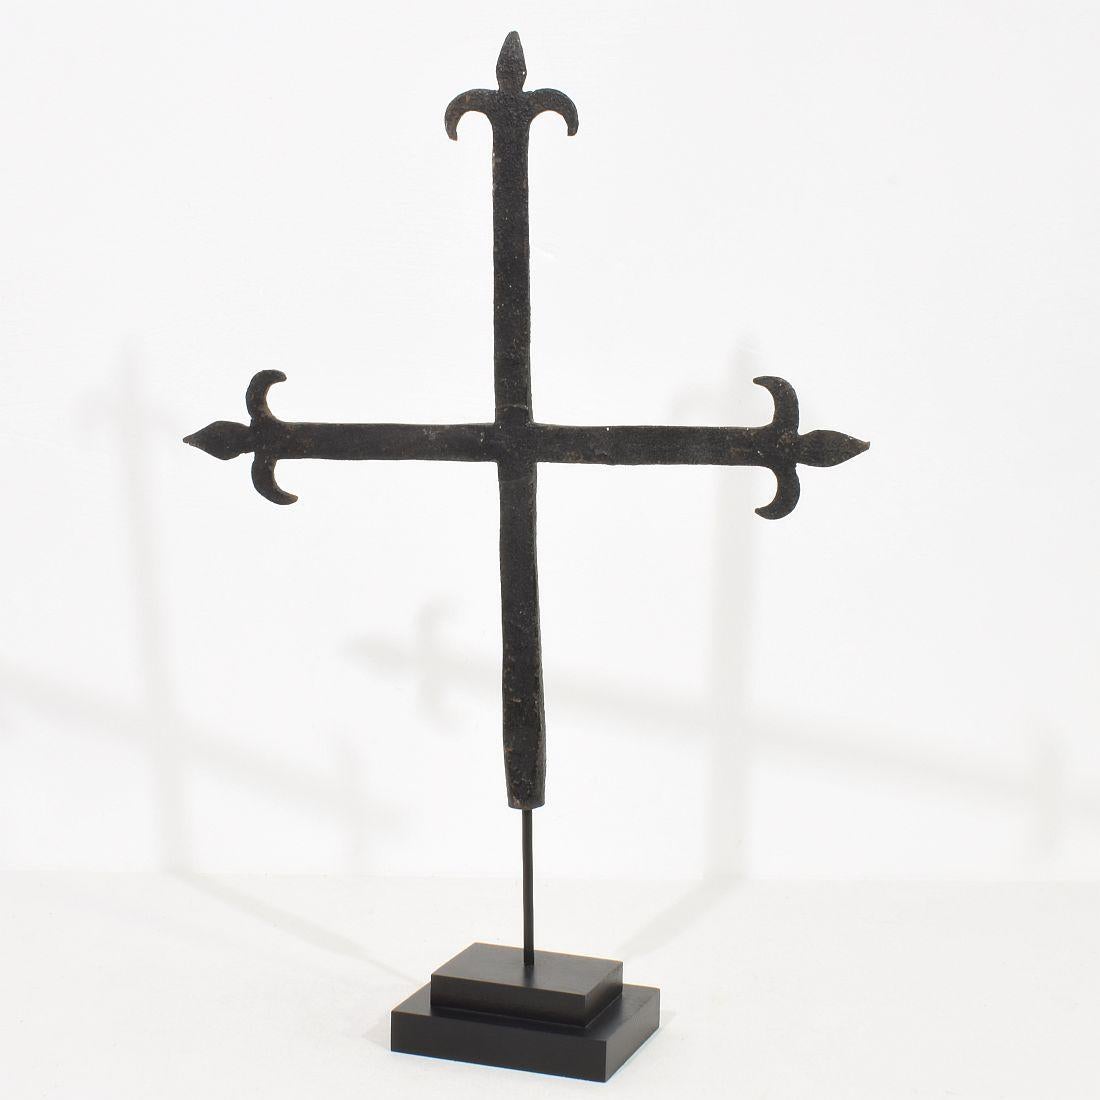 Einzigartiges handgeschmiedetes Eisenkreuz, das einst in der Mitte eines provenzalischen Dorfes stand.
Frankreich, ca. 1650-1750. Verwittert.
Die Messung erfolgt mit dem Holzsockel.